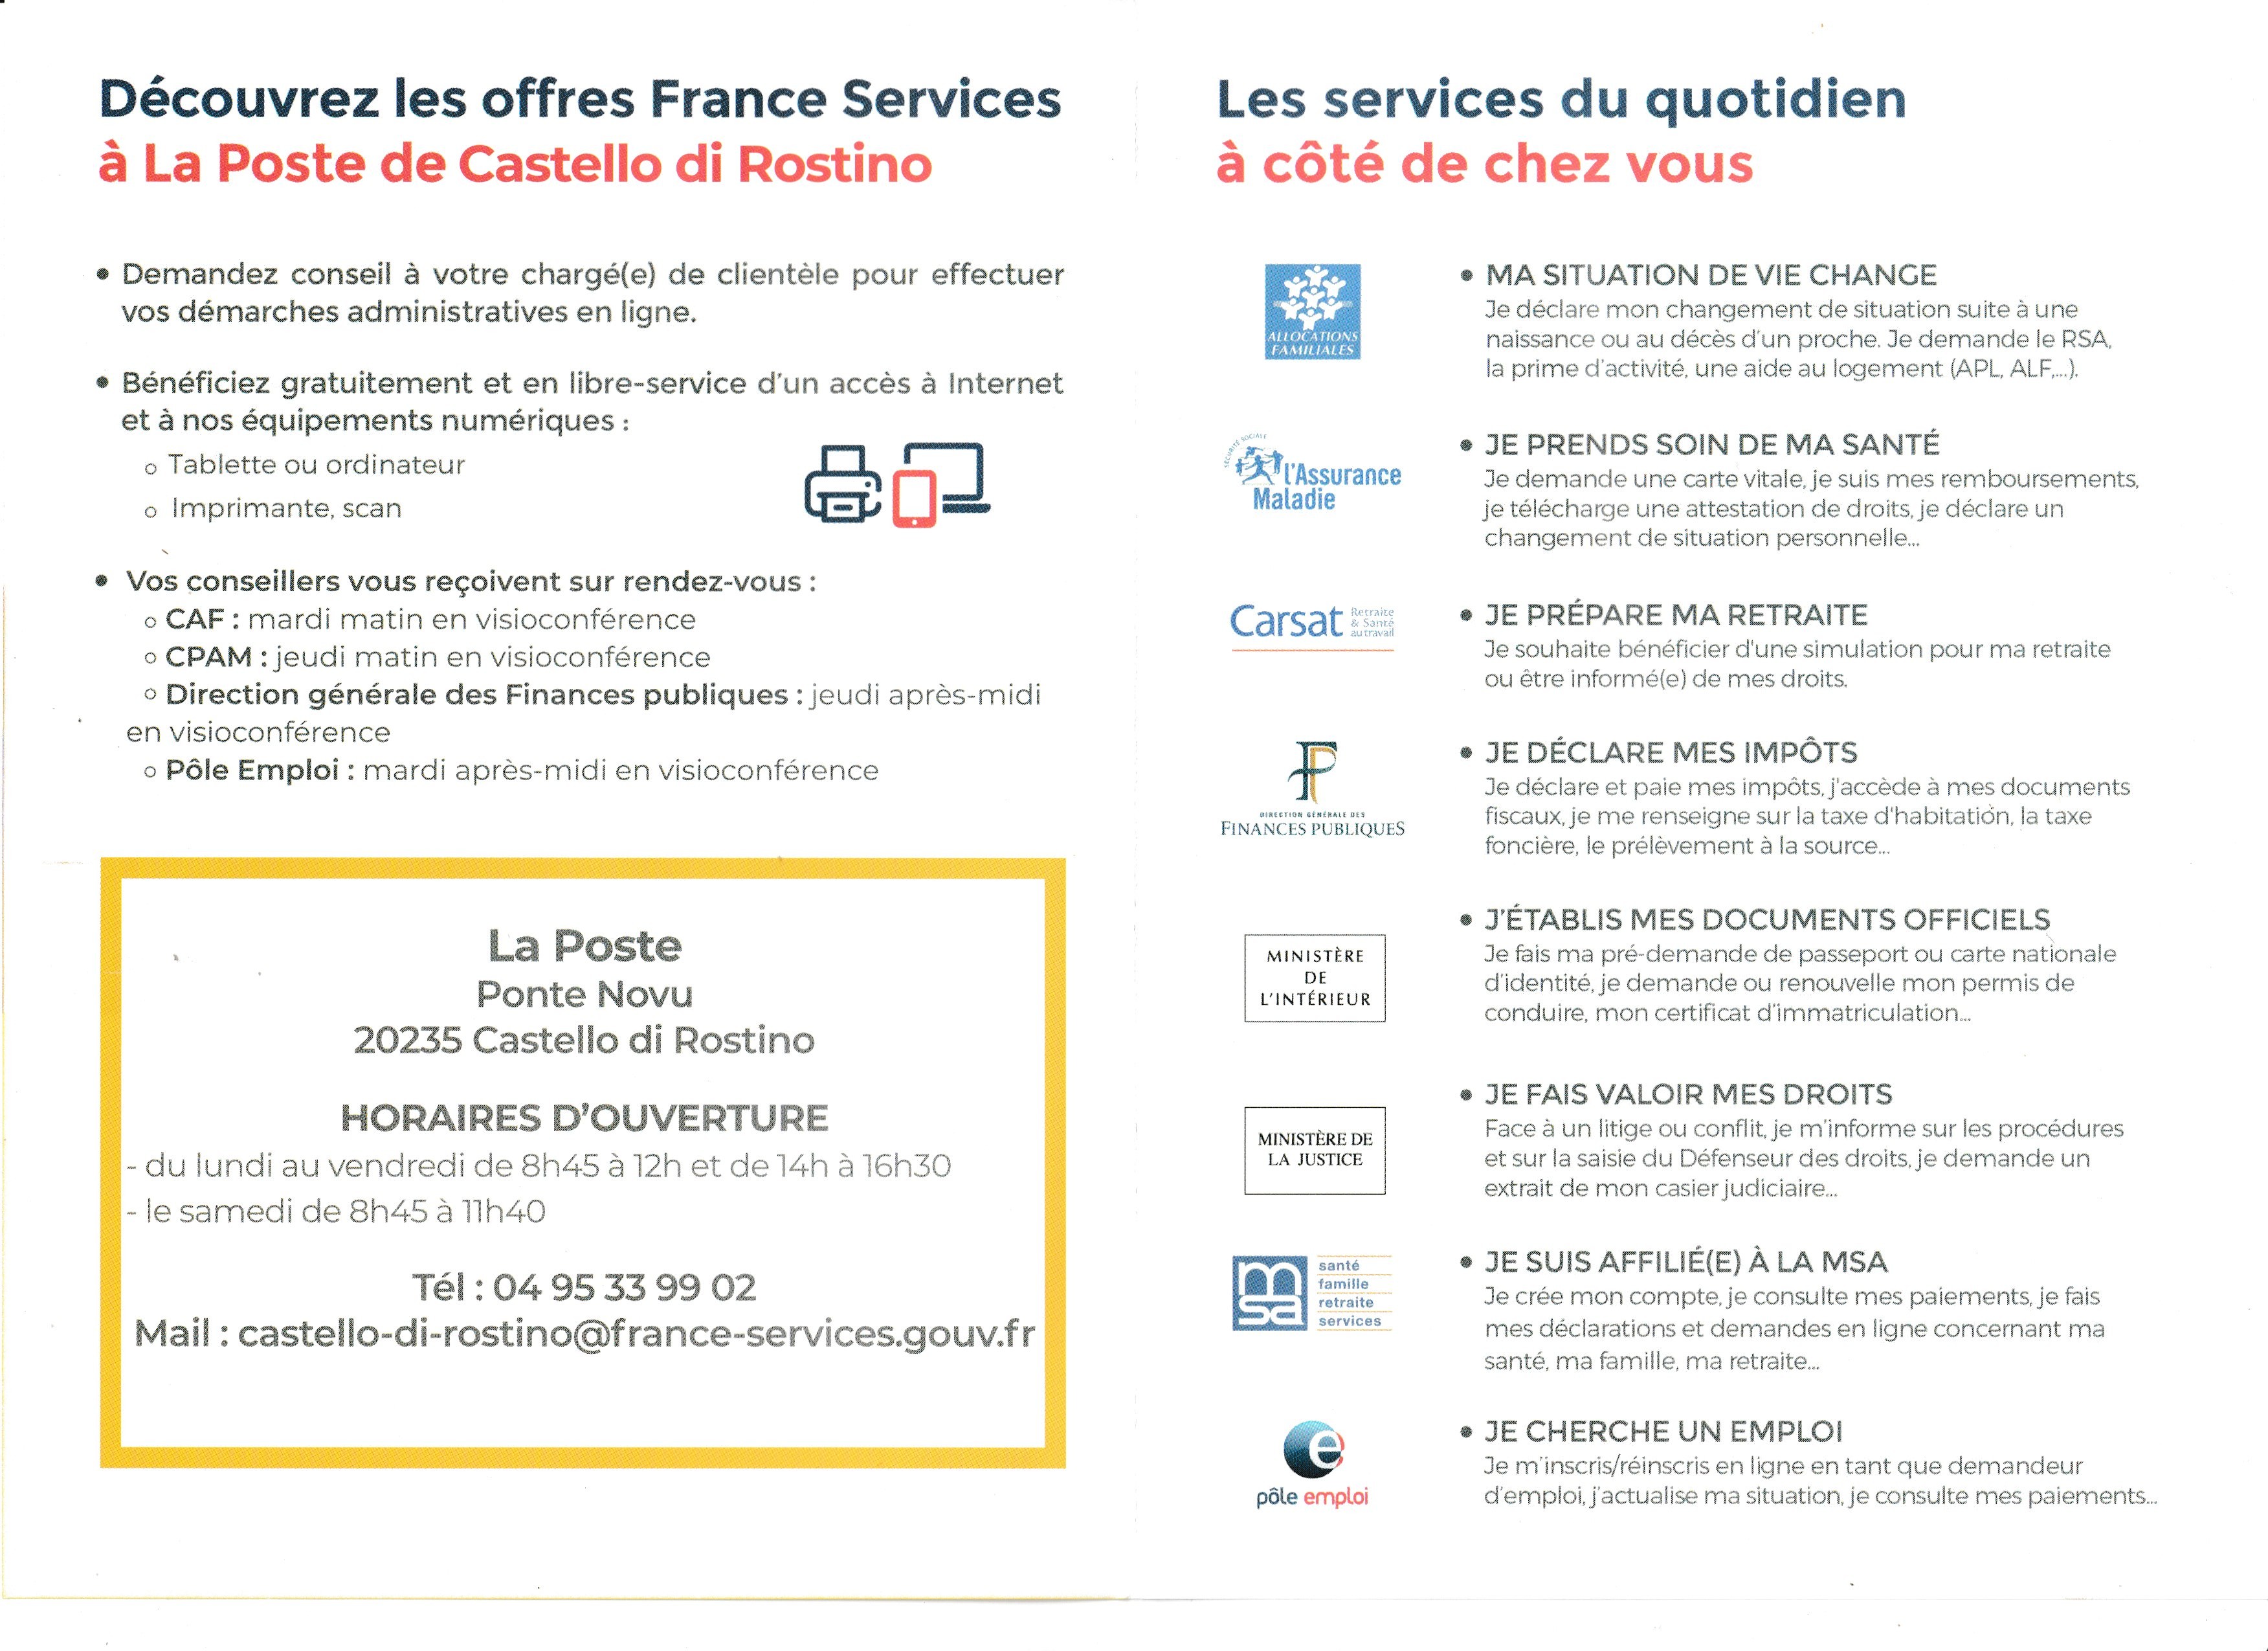 FranceServices_1.jpeg